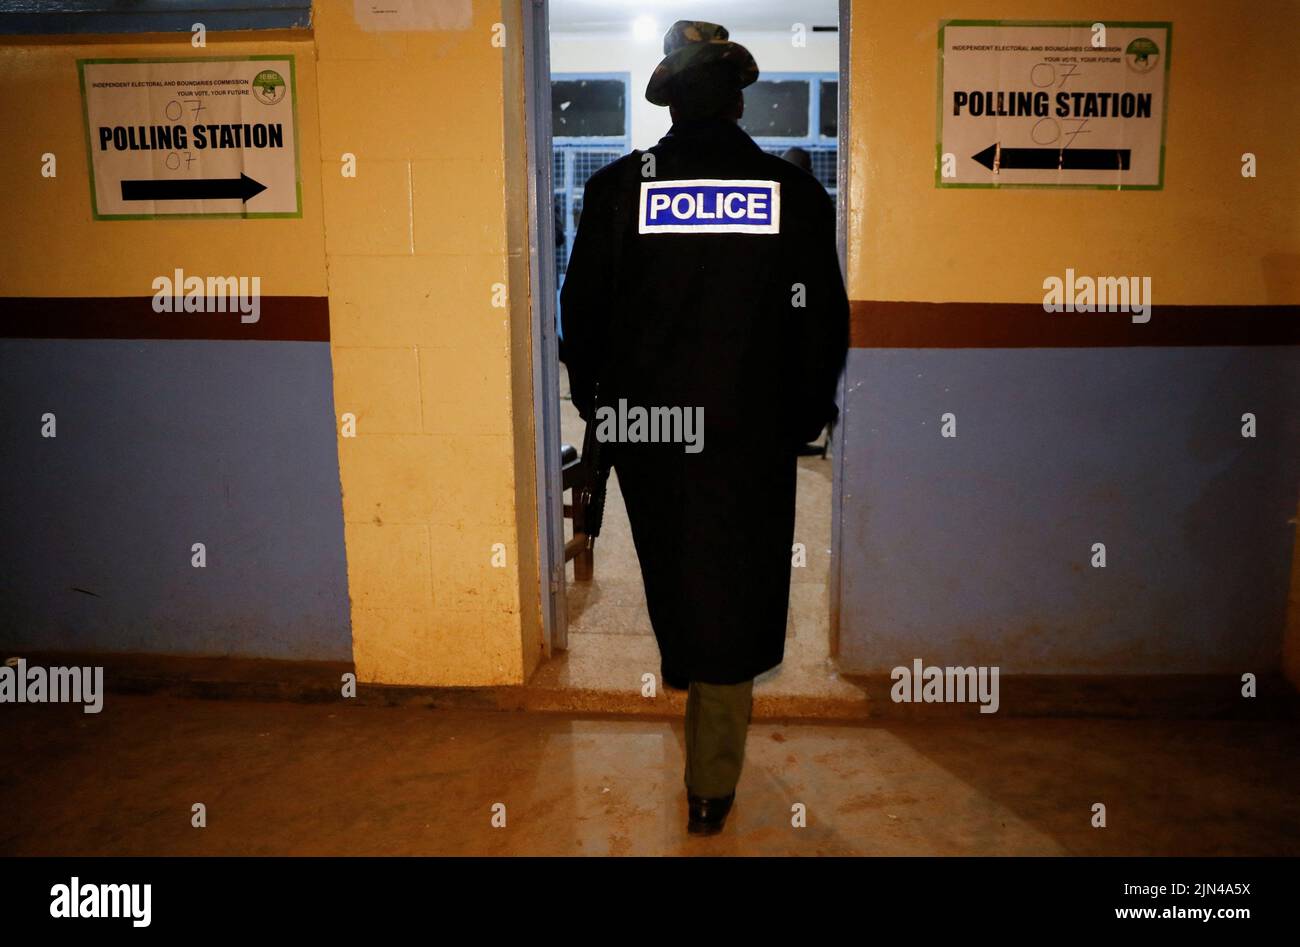 Un oficial de policía entra en un centro de votación por la Comisión Independiente Electoral y de Fronteras (IEBC) antes de la apertura de las elecciones generales en Nairobi, Kenia, el 9 de agosto de 2022. REUTERS/Thomas Mukoya Foto de stock